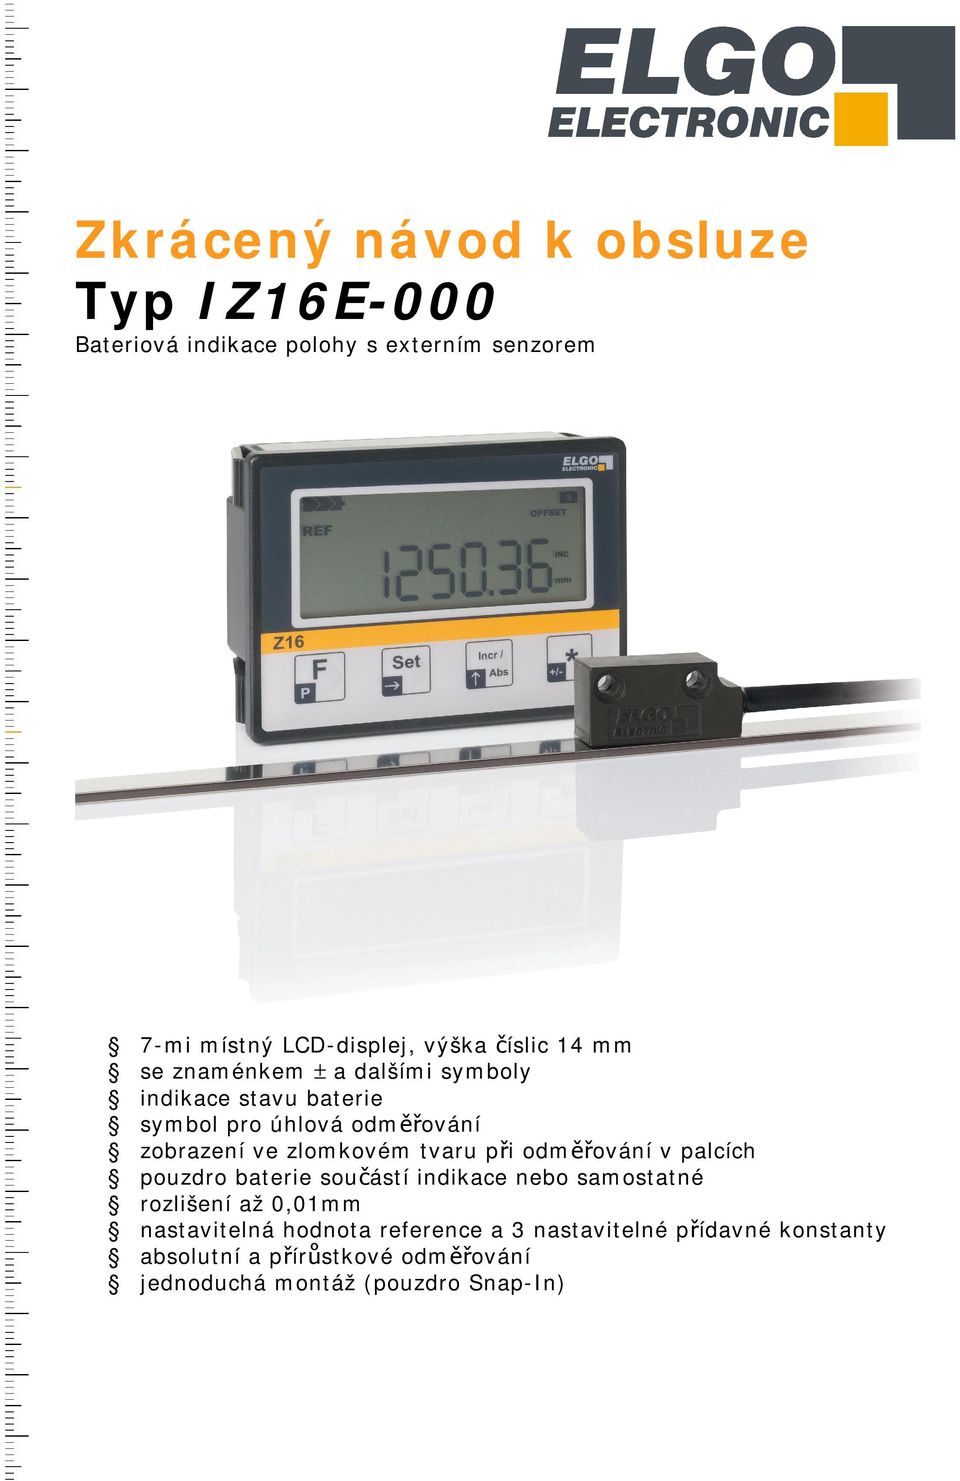 zlomkovém tvaru při odměřování v palcích pouzdro baterie součástí indikace nebo samostatné rozlišení až 0,01mm